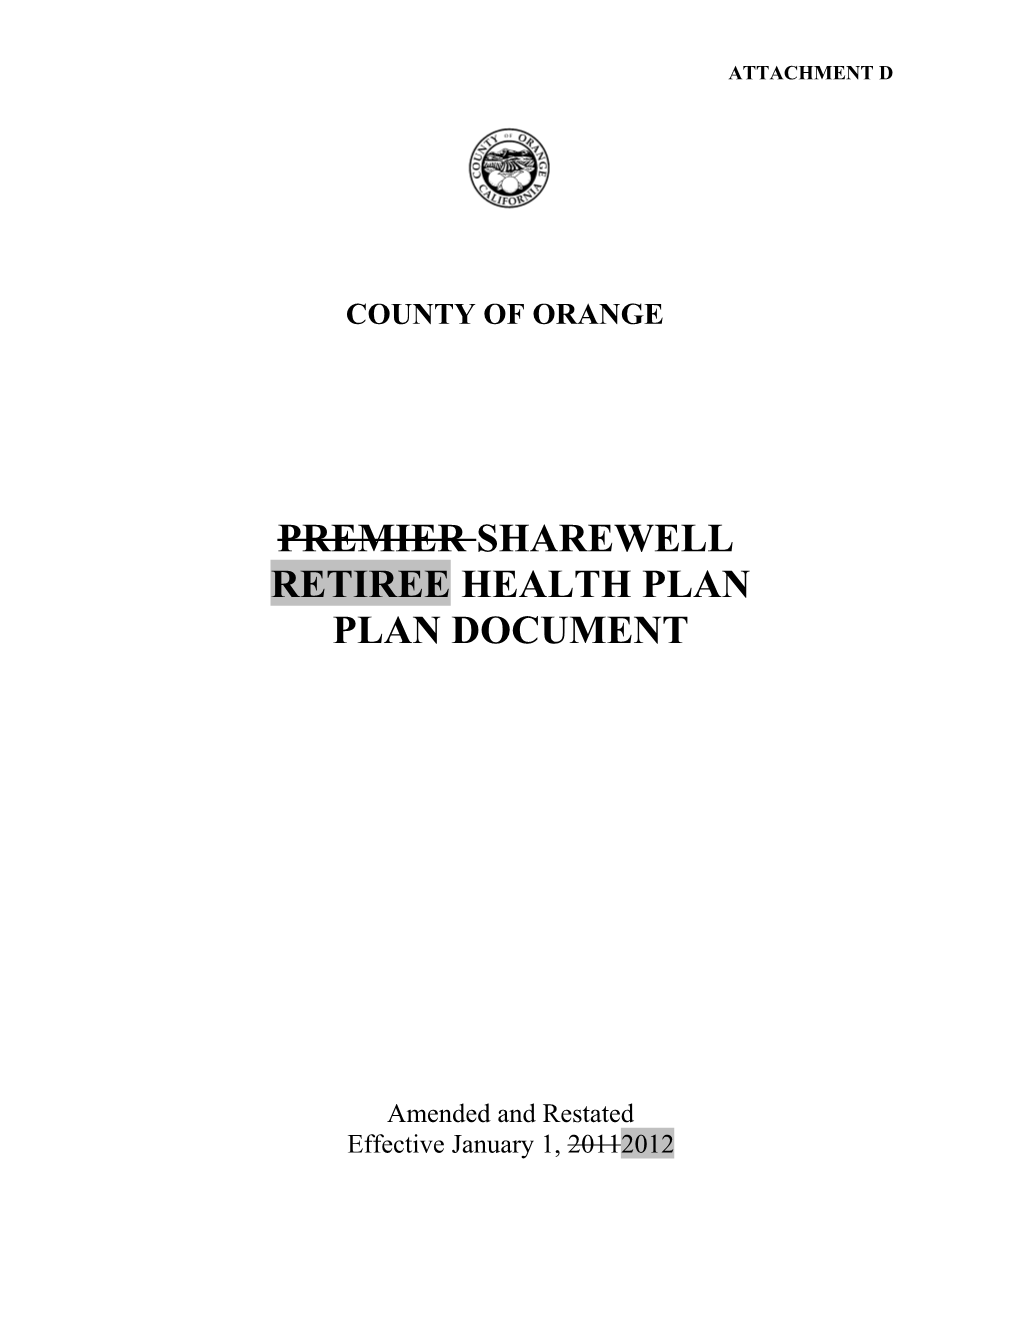 Premier Sharewell